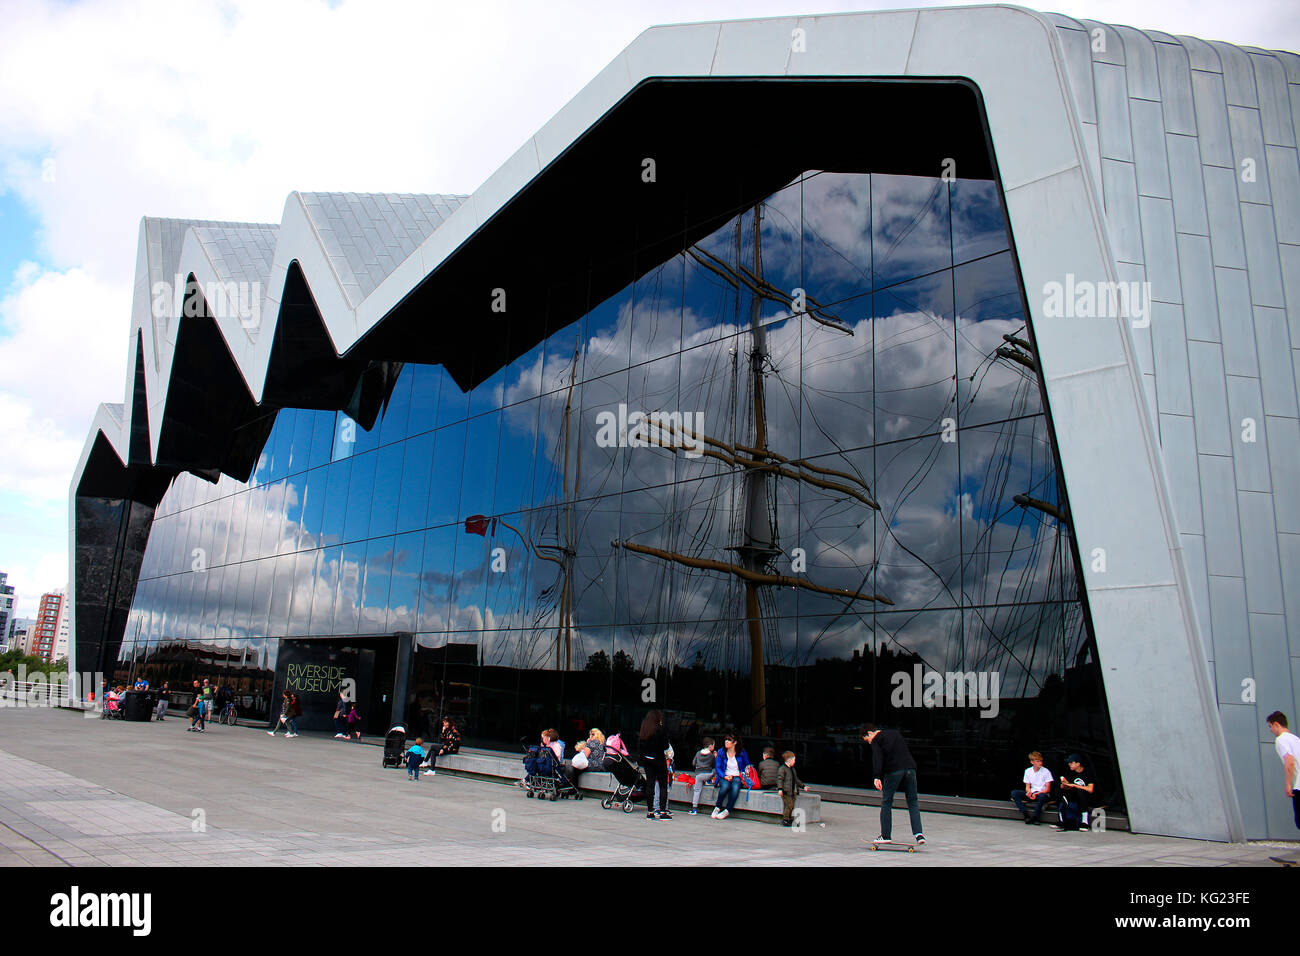 das von Zaha Hadid entworfene Riverside Museum of Transport, Glasgow, Schottland/ Scotland. Stock Photo